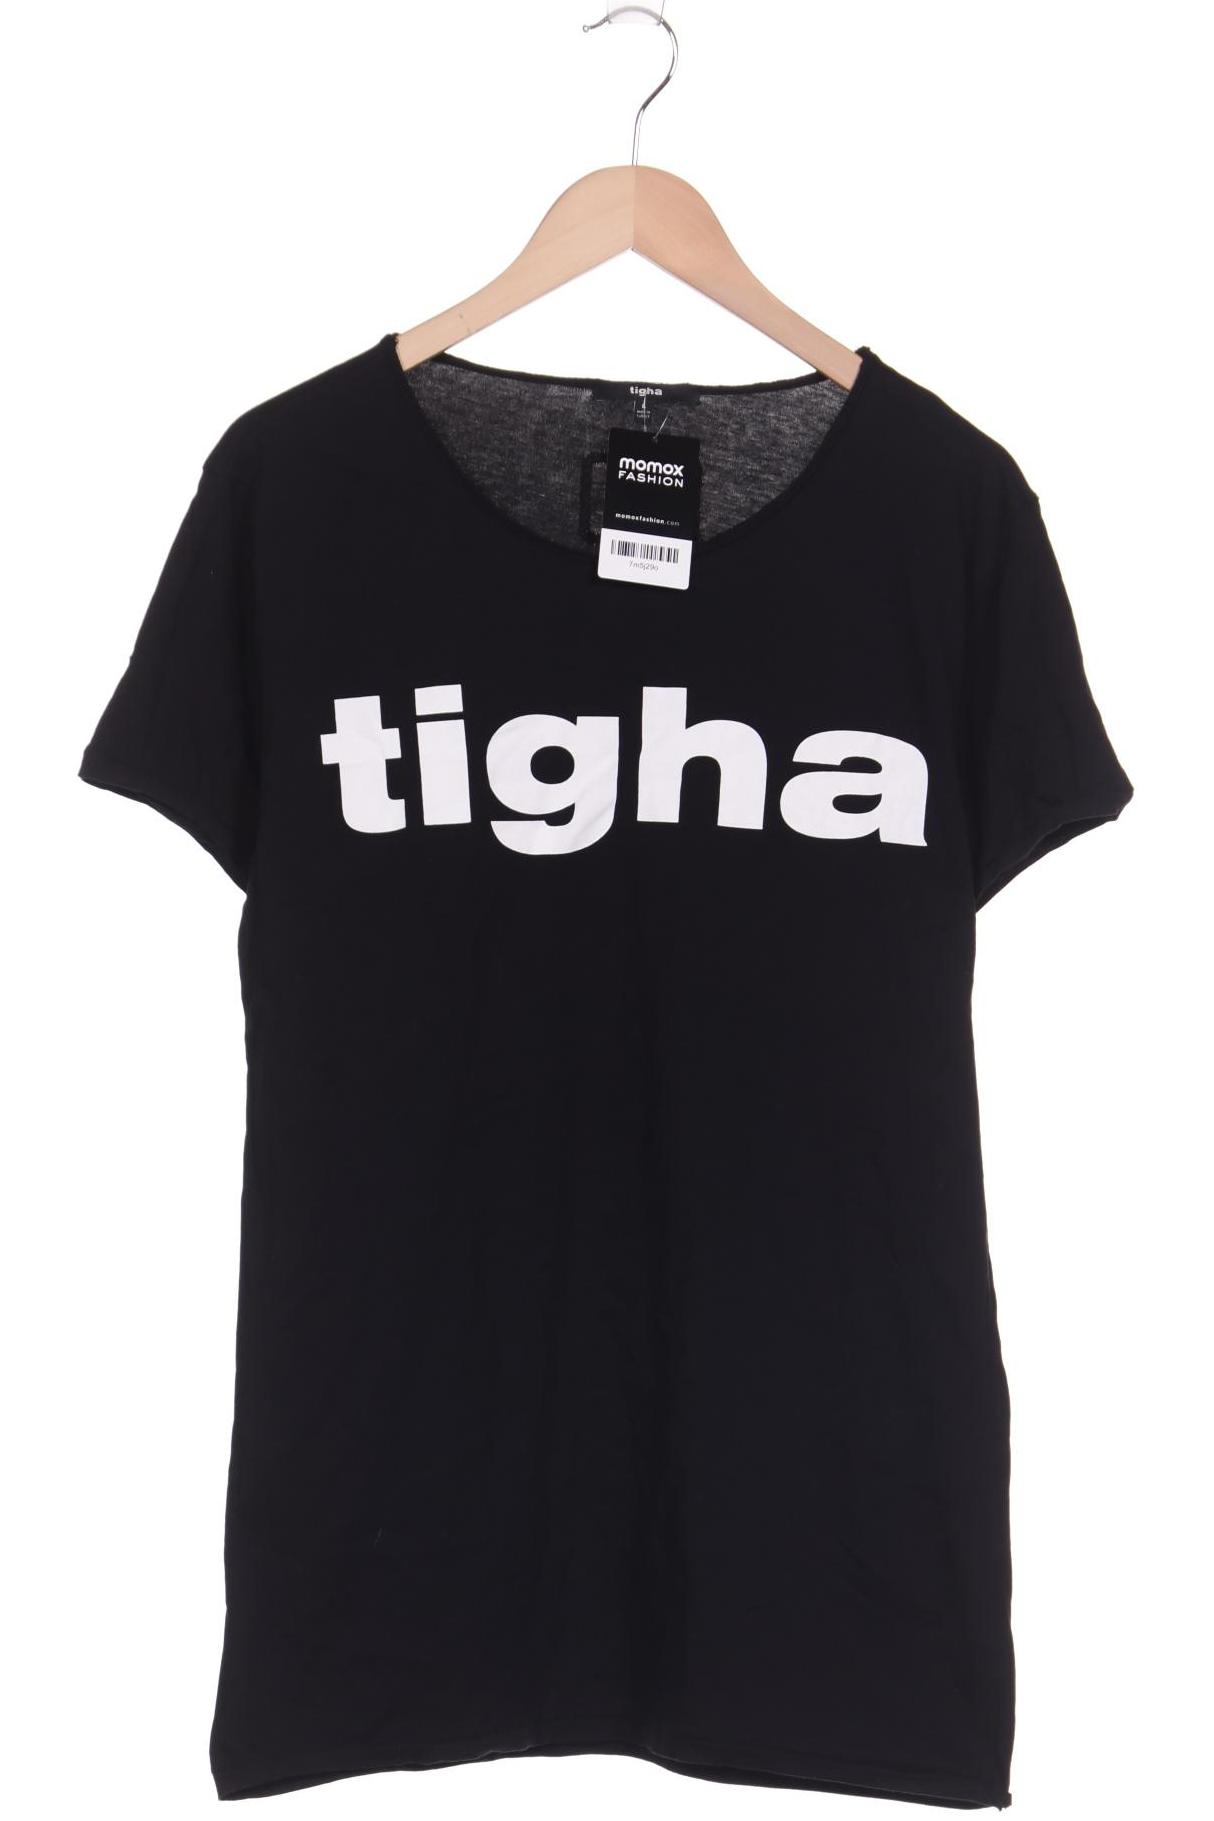 tigha Herren T-Shirt, schwarz von tigha